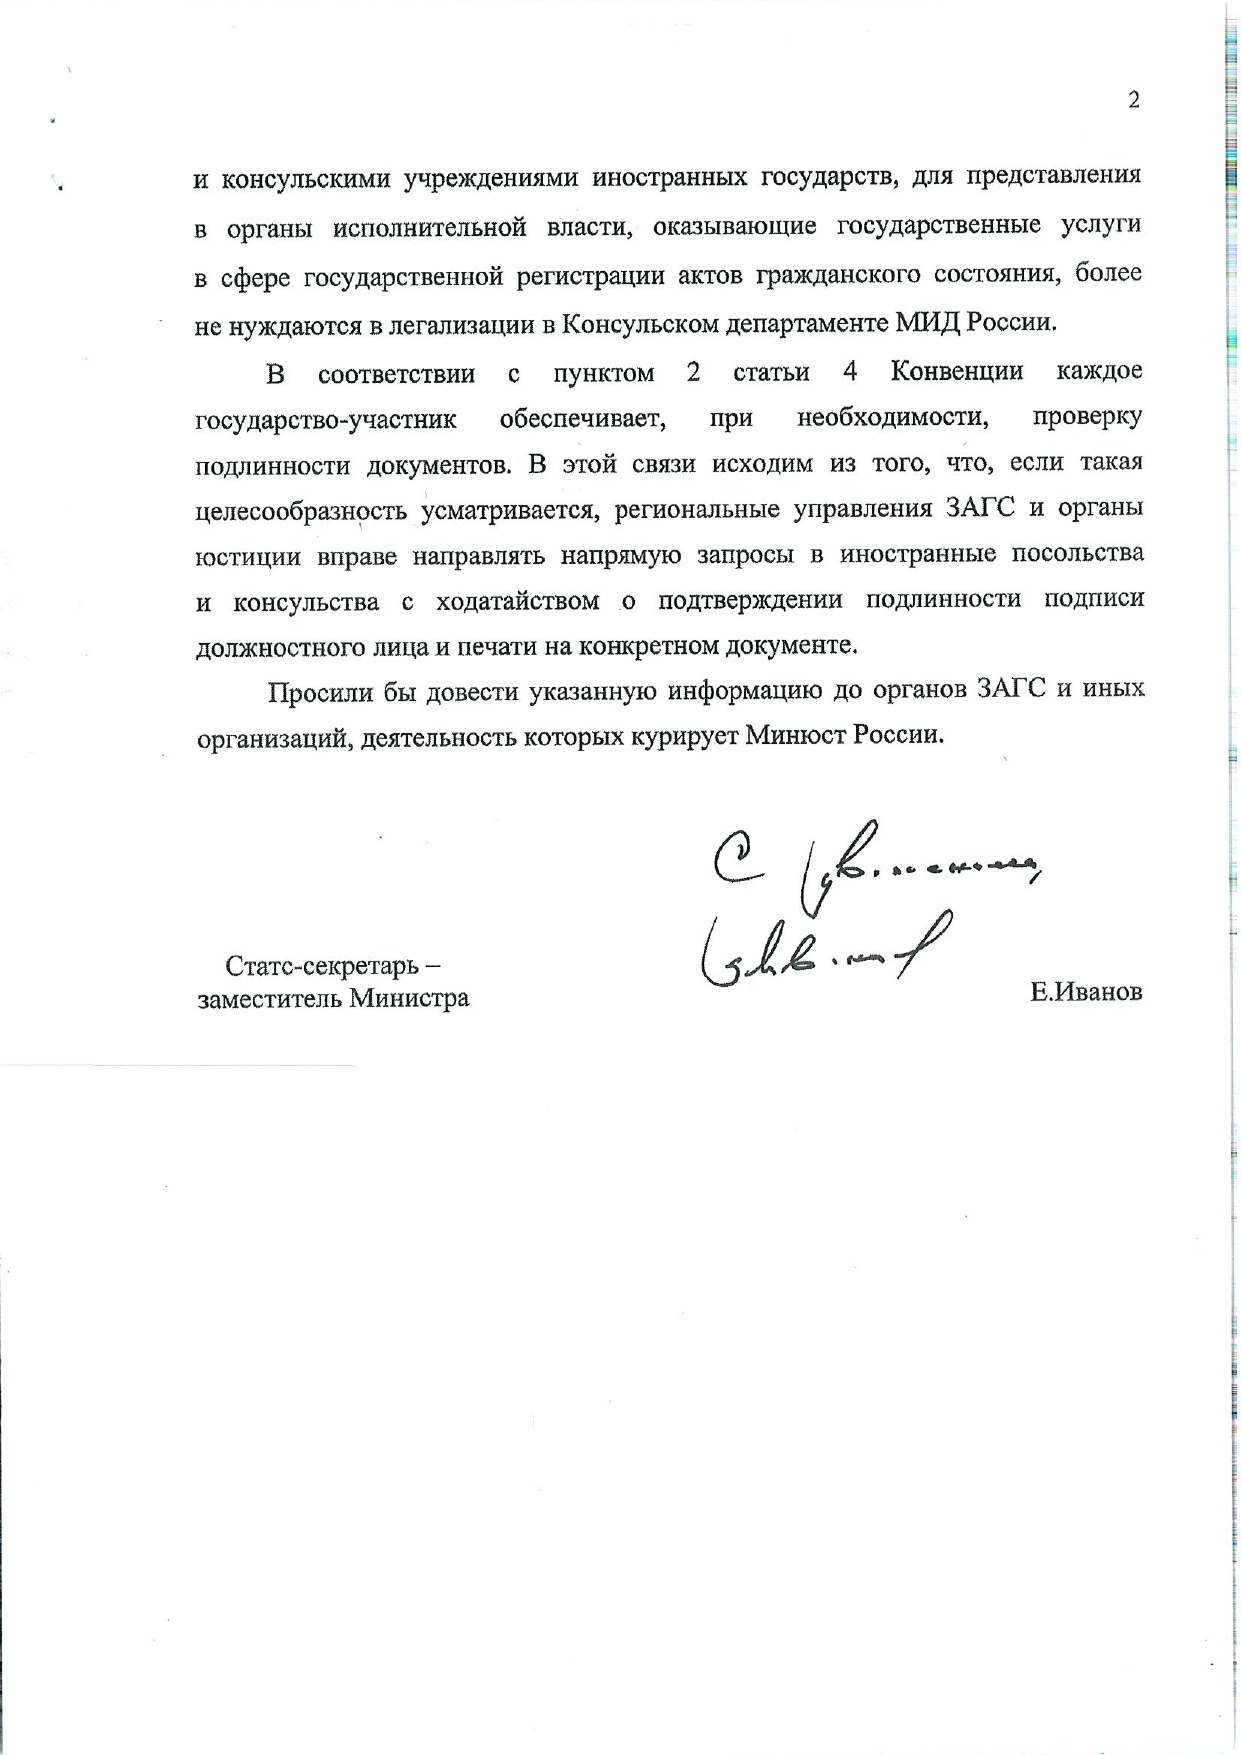 О вступлении для России в силу Европейской конвенции об отмене легализации документов, составленных дипломатическими агентами или консульскими должностными лицами